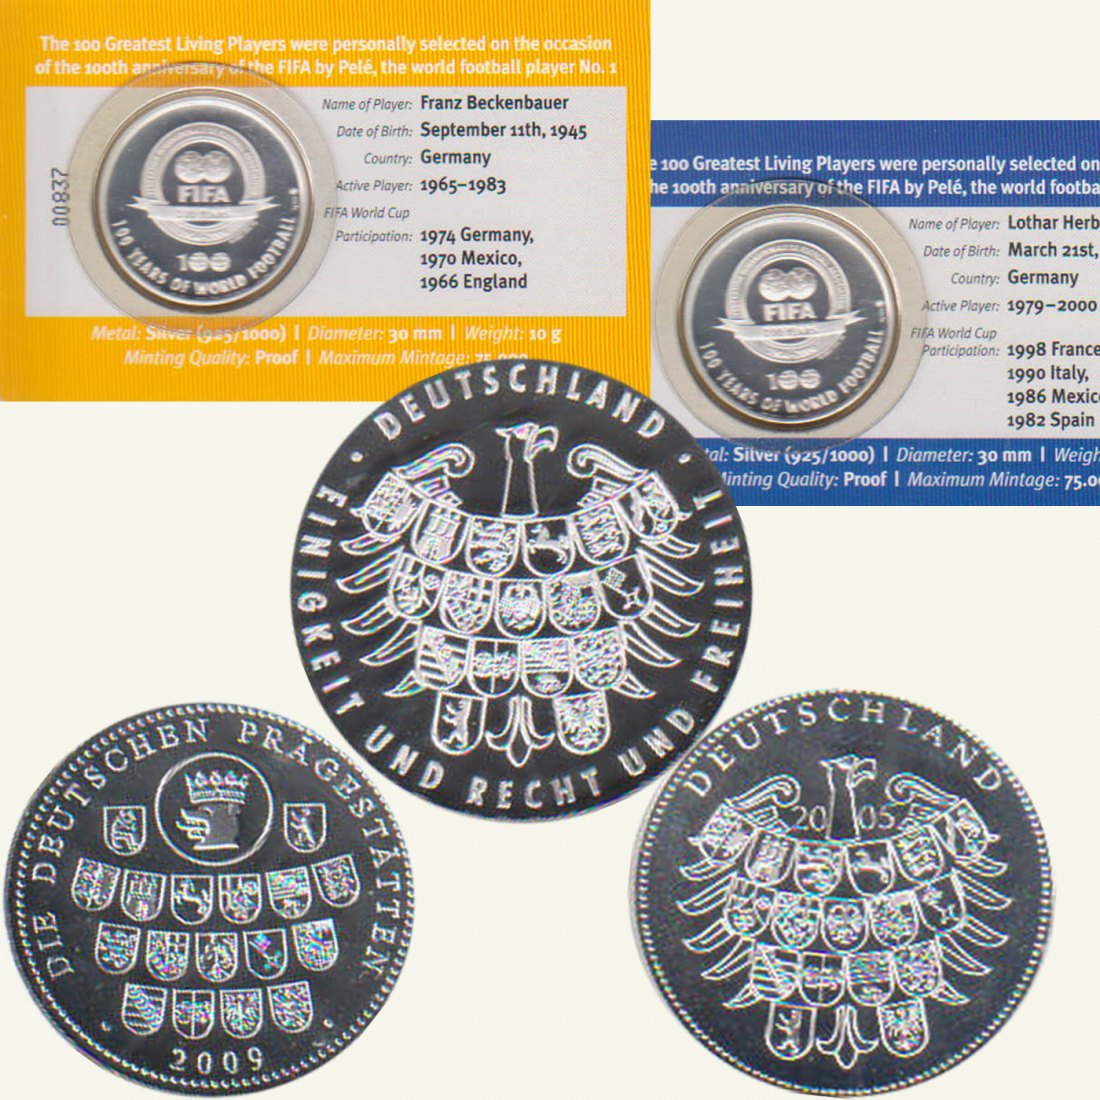  3 Silbermedaillen *40 Jahre DDR - Schiffbau der DDR* 1991 *PP* 2oz Silber Münze Berlin   